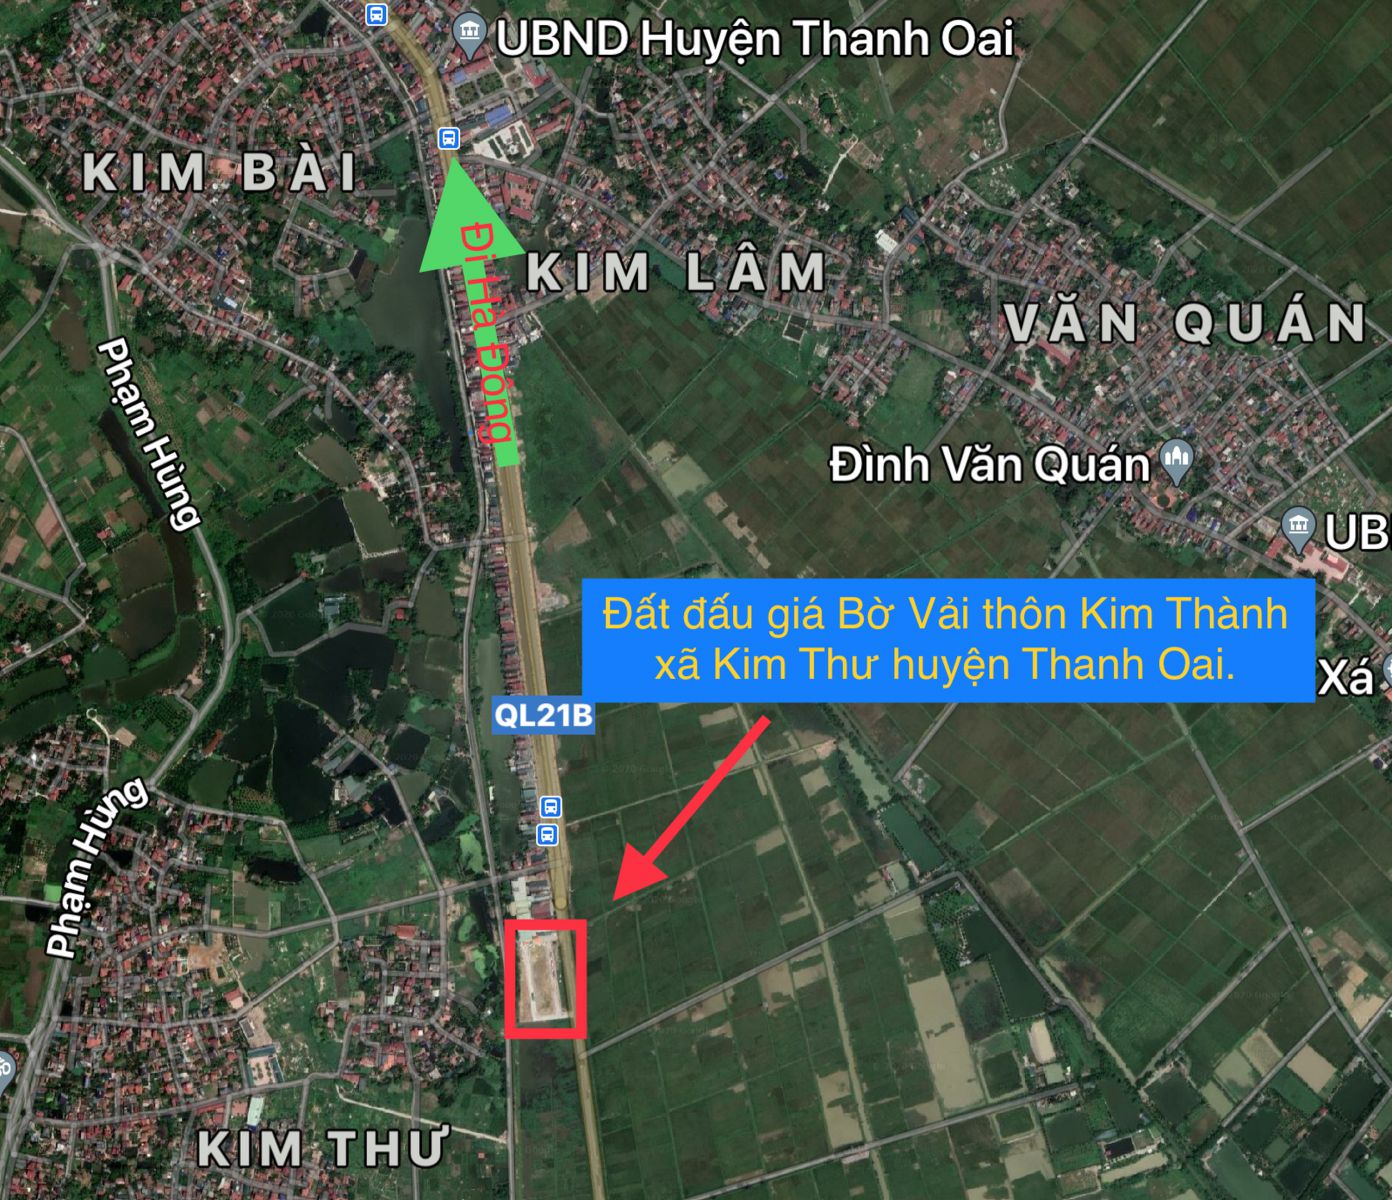 Vị trí khu đấu giá xã KIm Thư huyện Thanh Oai